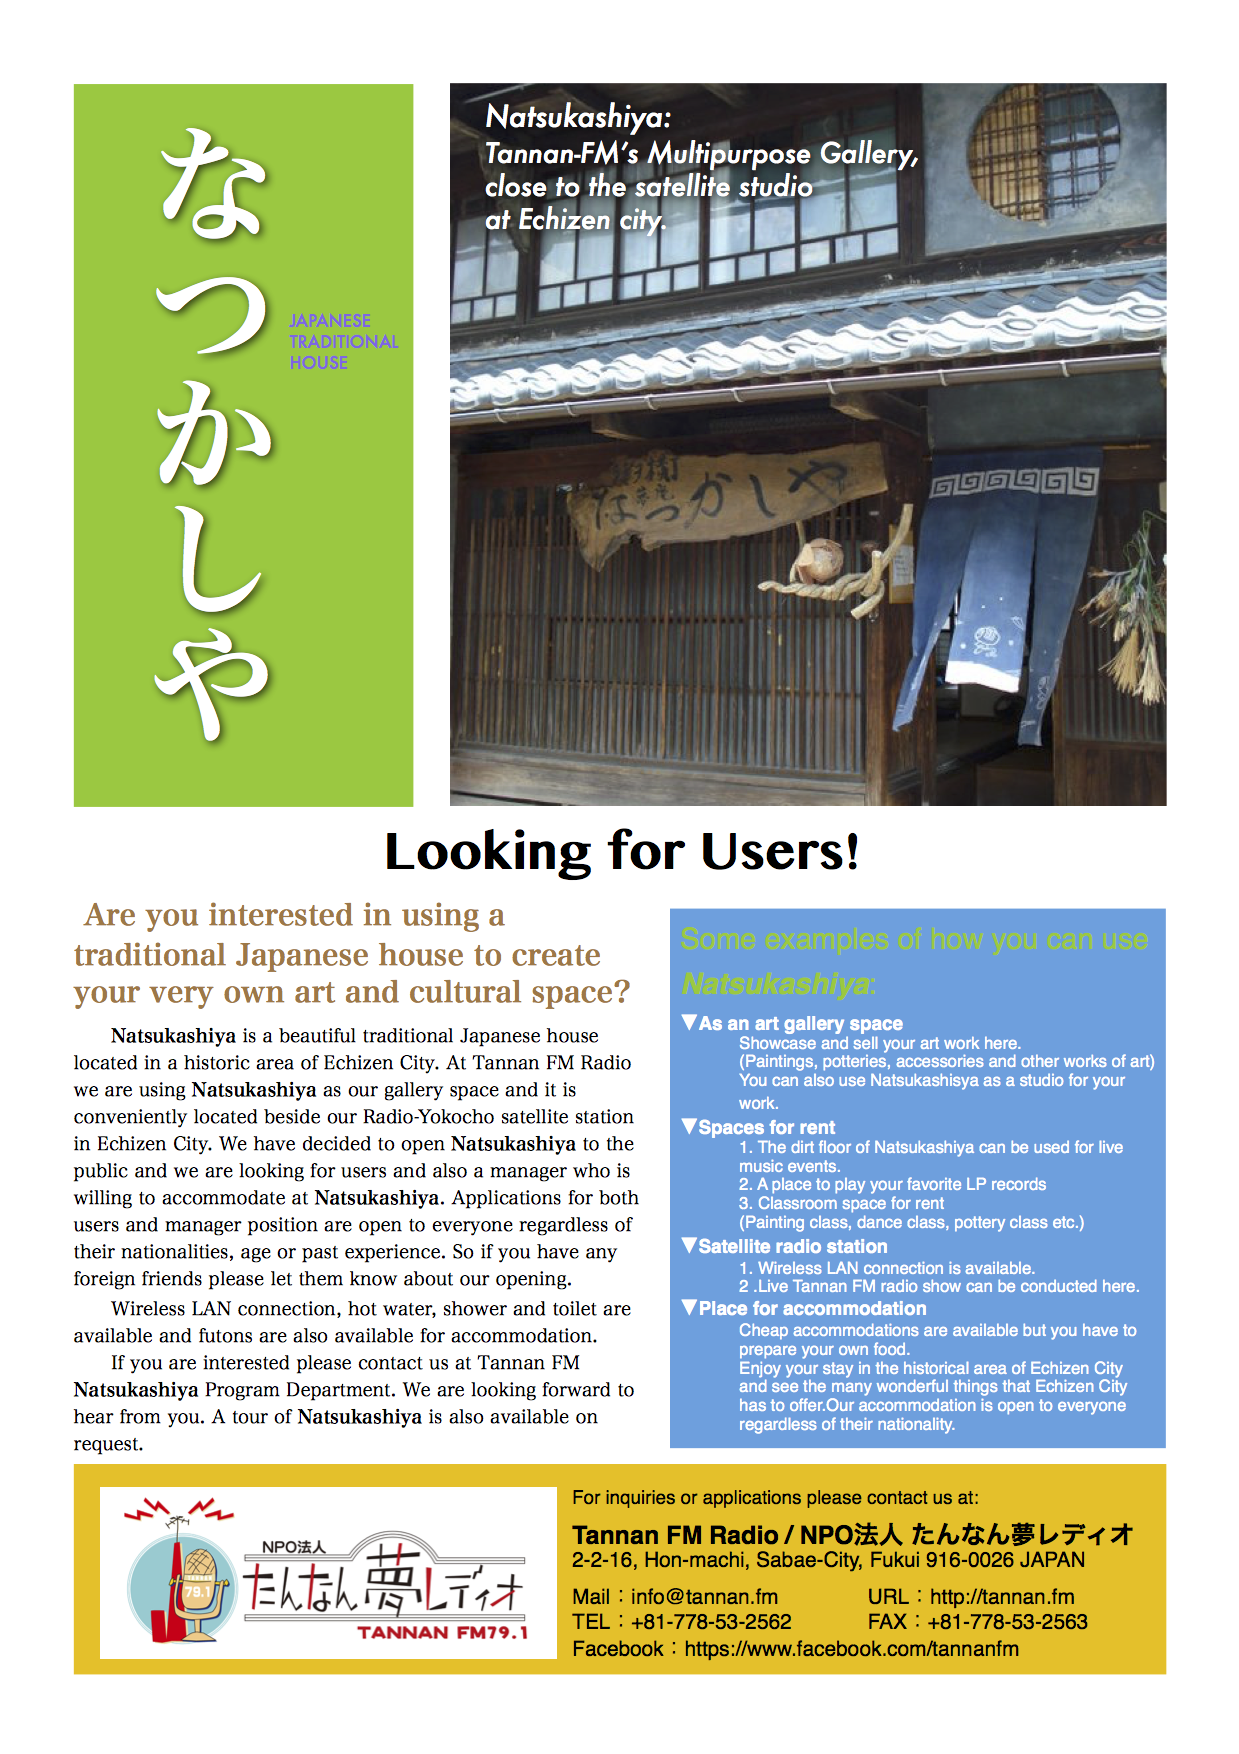 Download Natsuyashiya leaflet in English